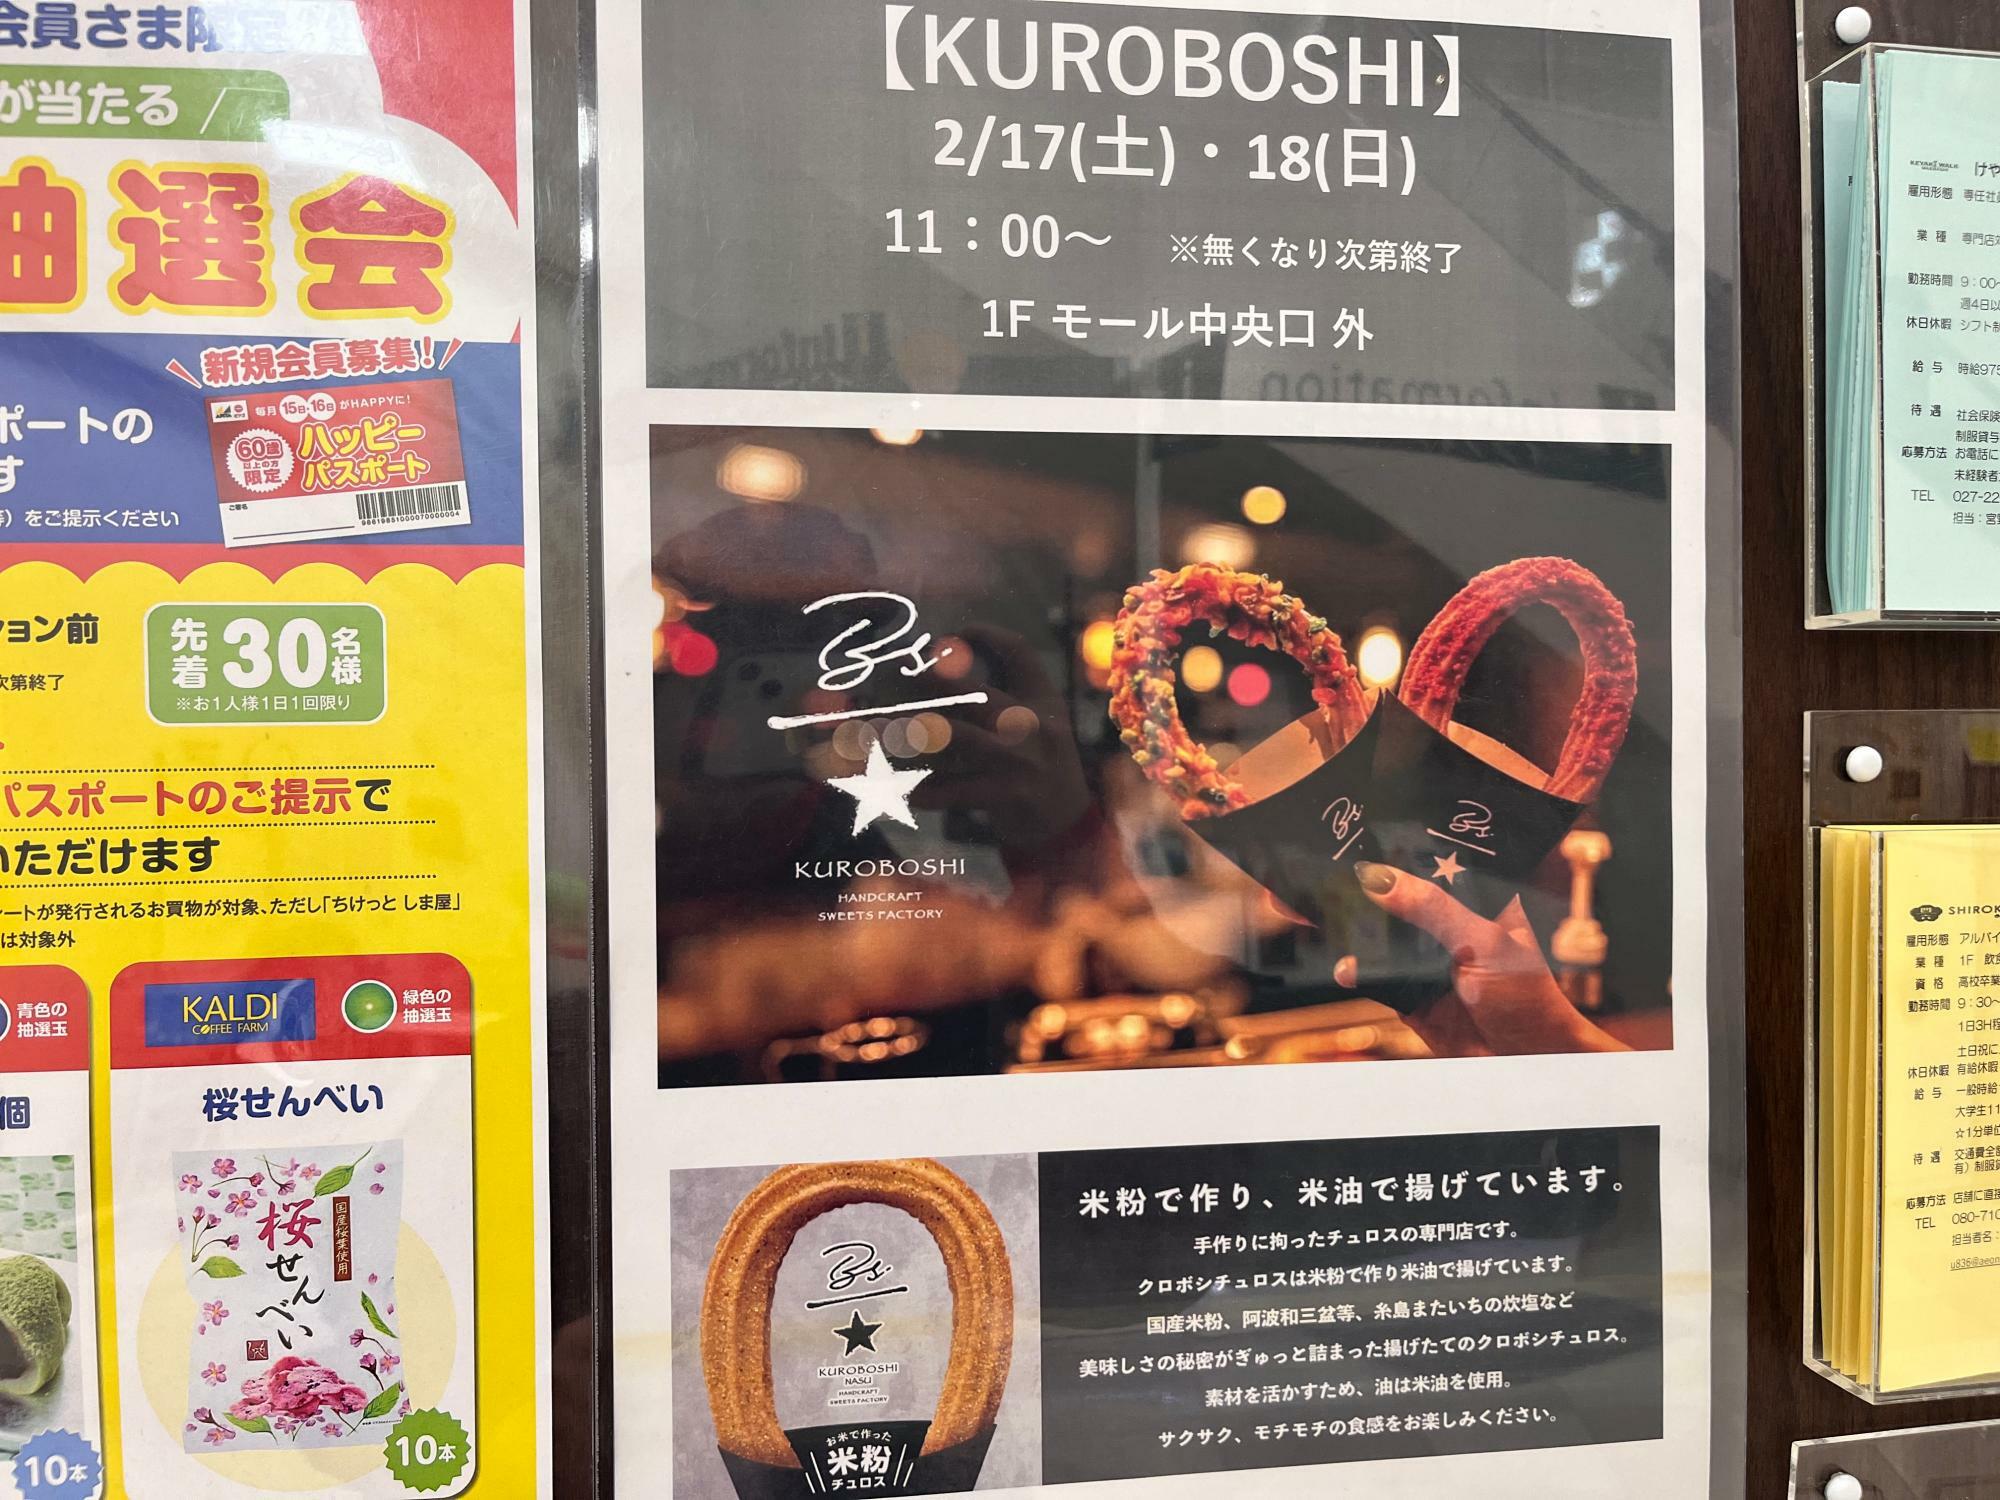 「KUROBOSHI」特別販売開催告知のポスター